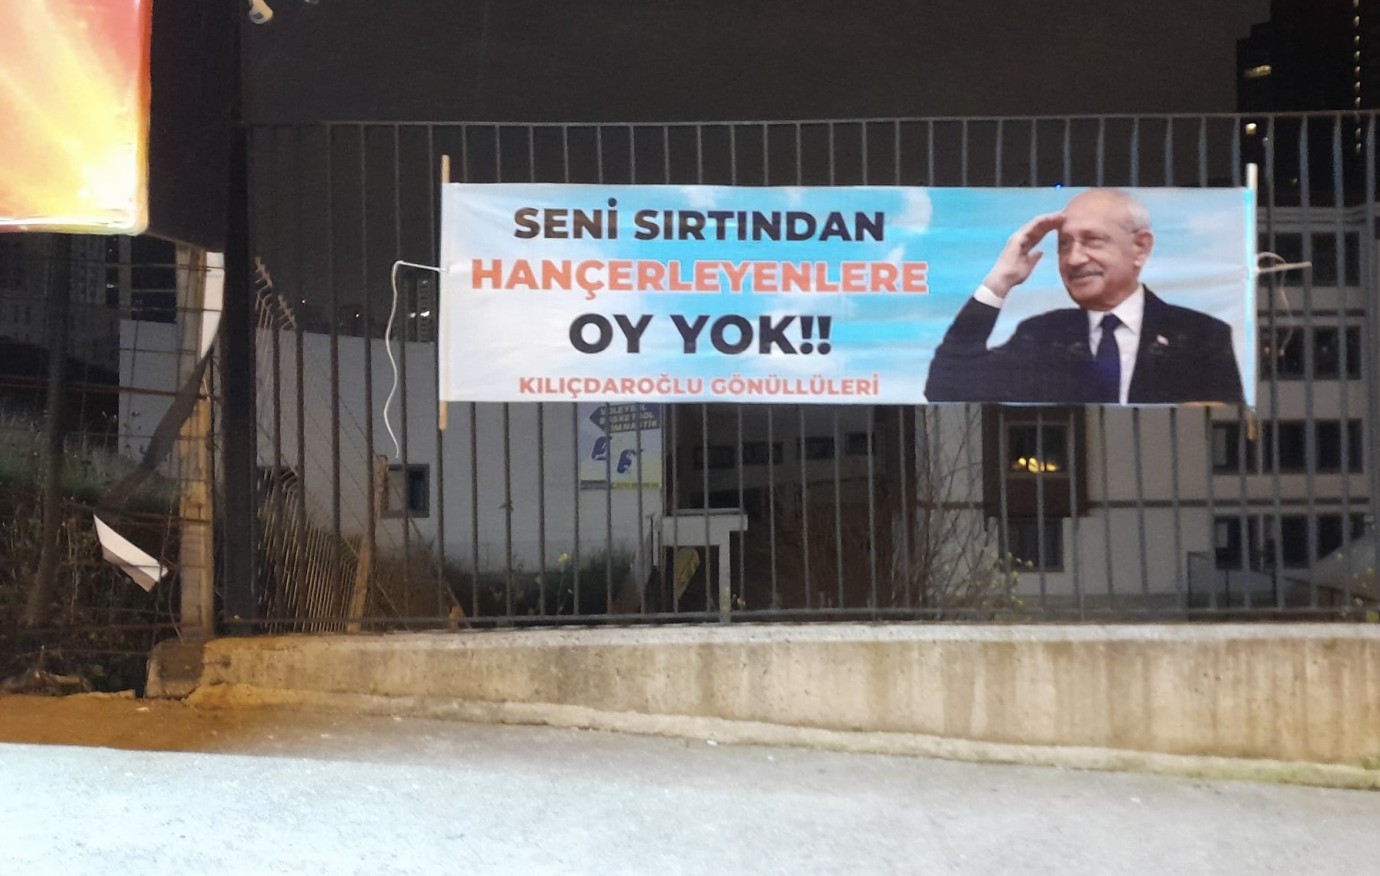 Adana siyasetinde korsan afiş dönemi